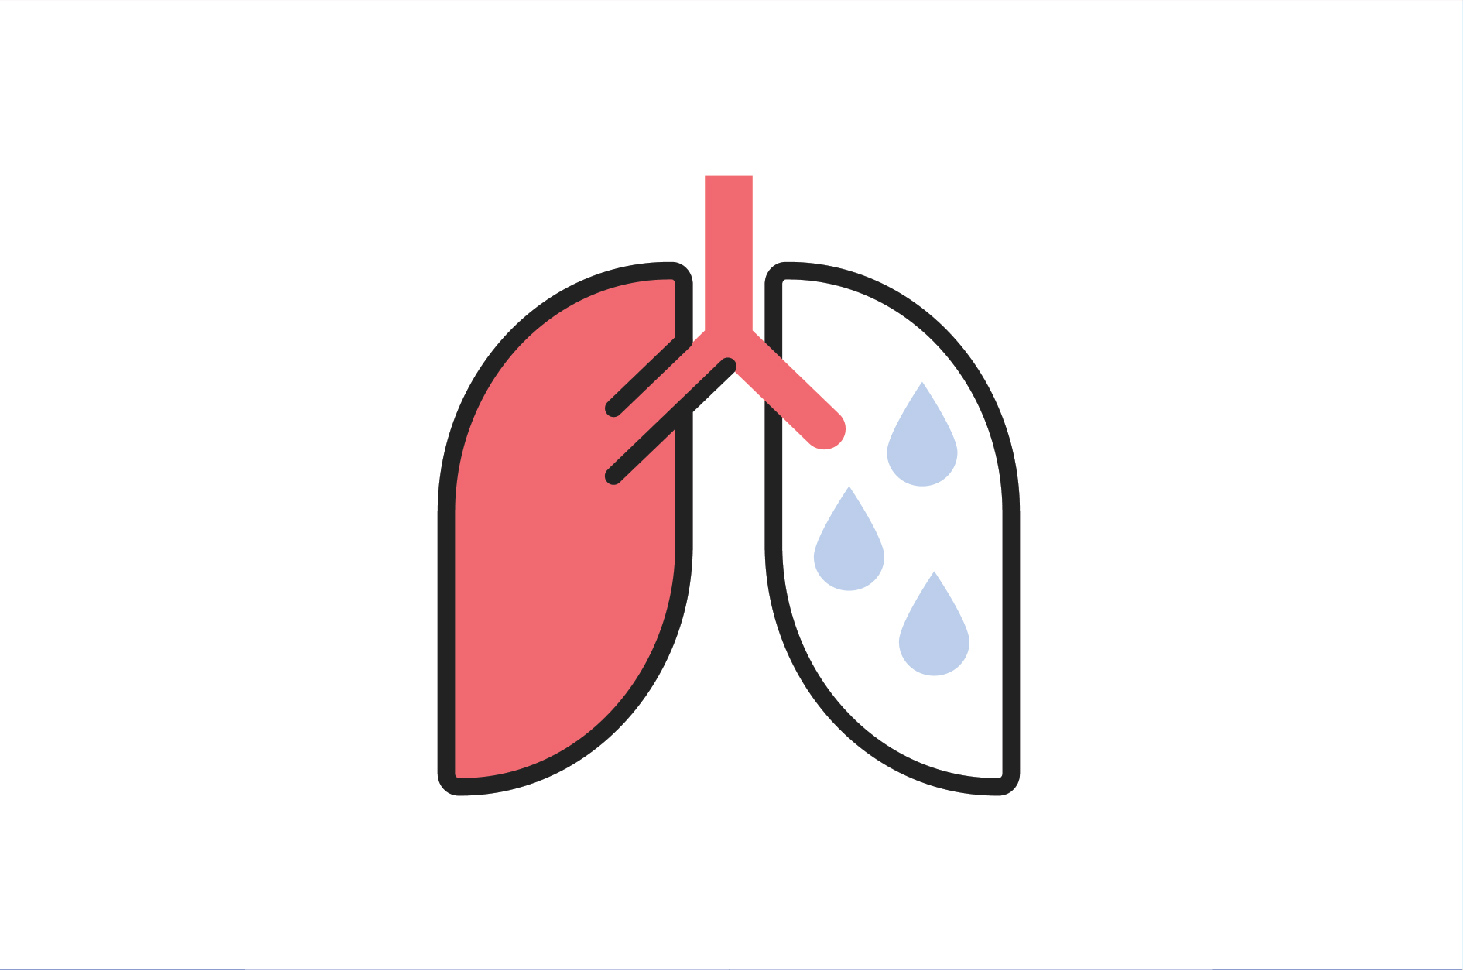 Pneumonia merupakan sebutan lain dari penyakit